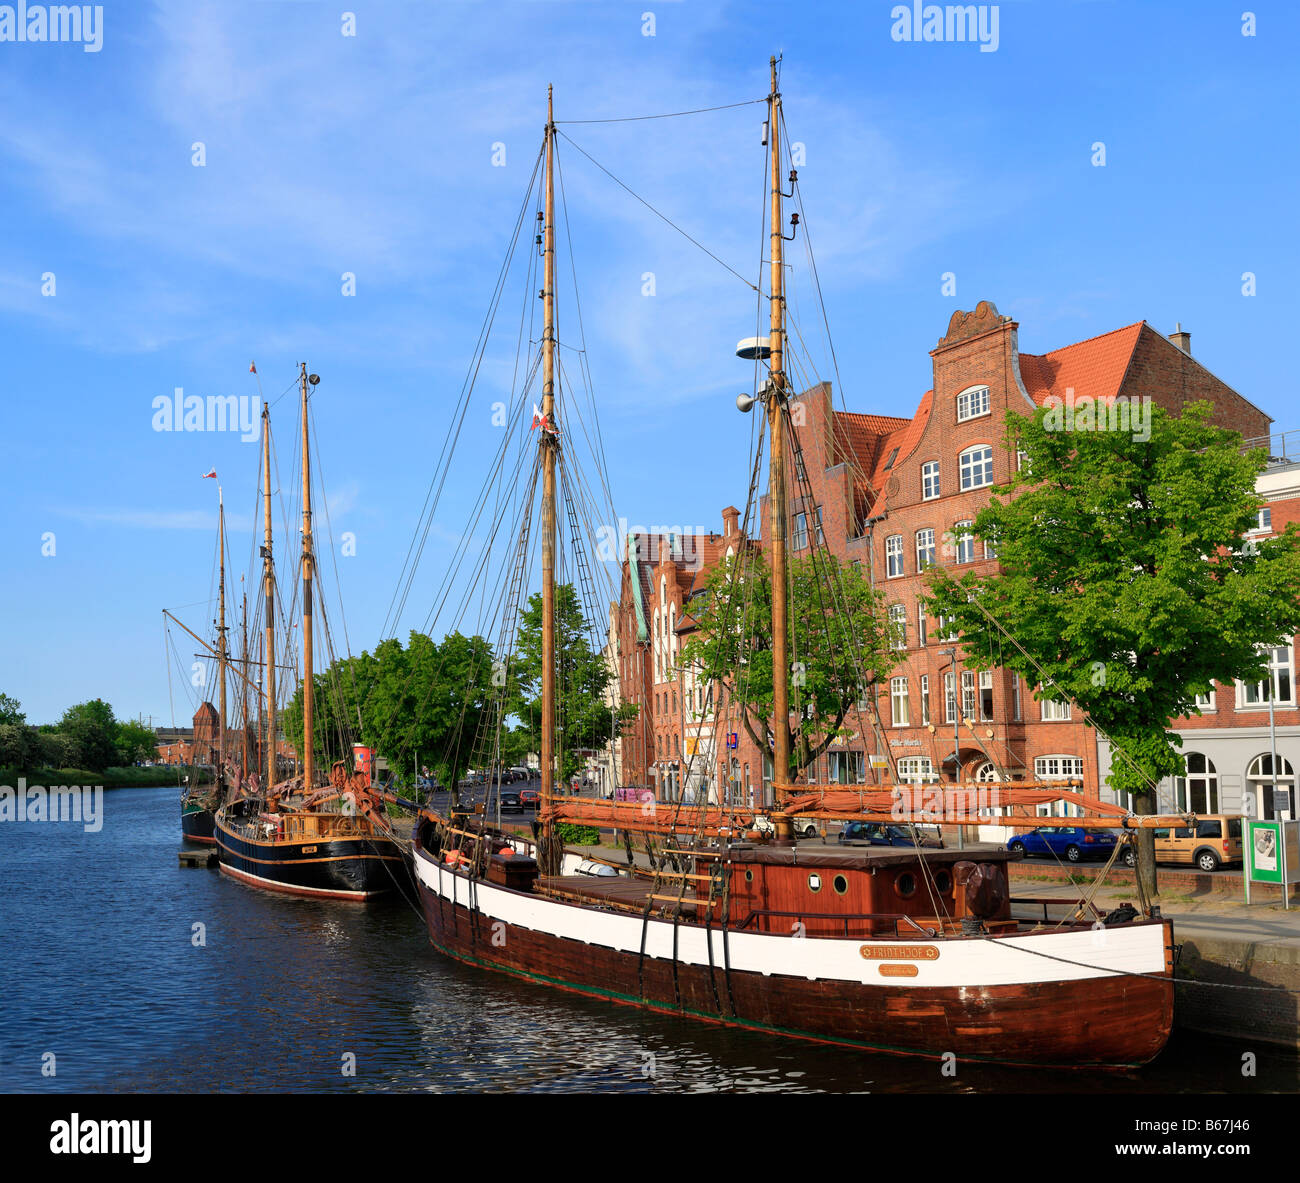 Alten Segel Schiff, Fluss Trave, Lübeck, Schleswig Holstein, Deutschland Stockfoto